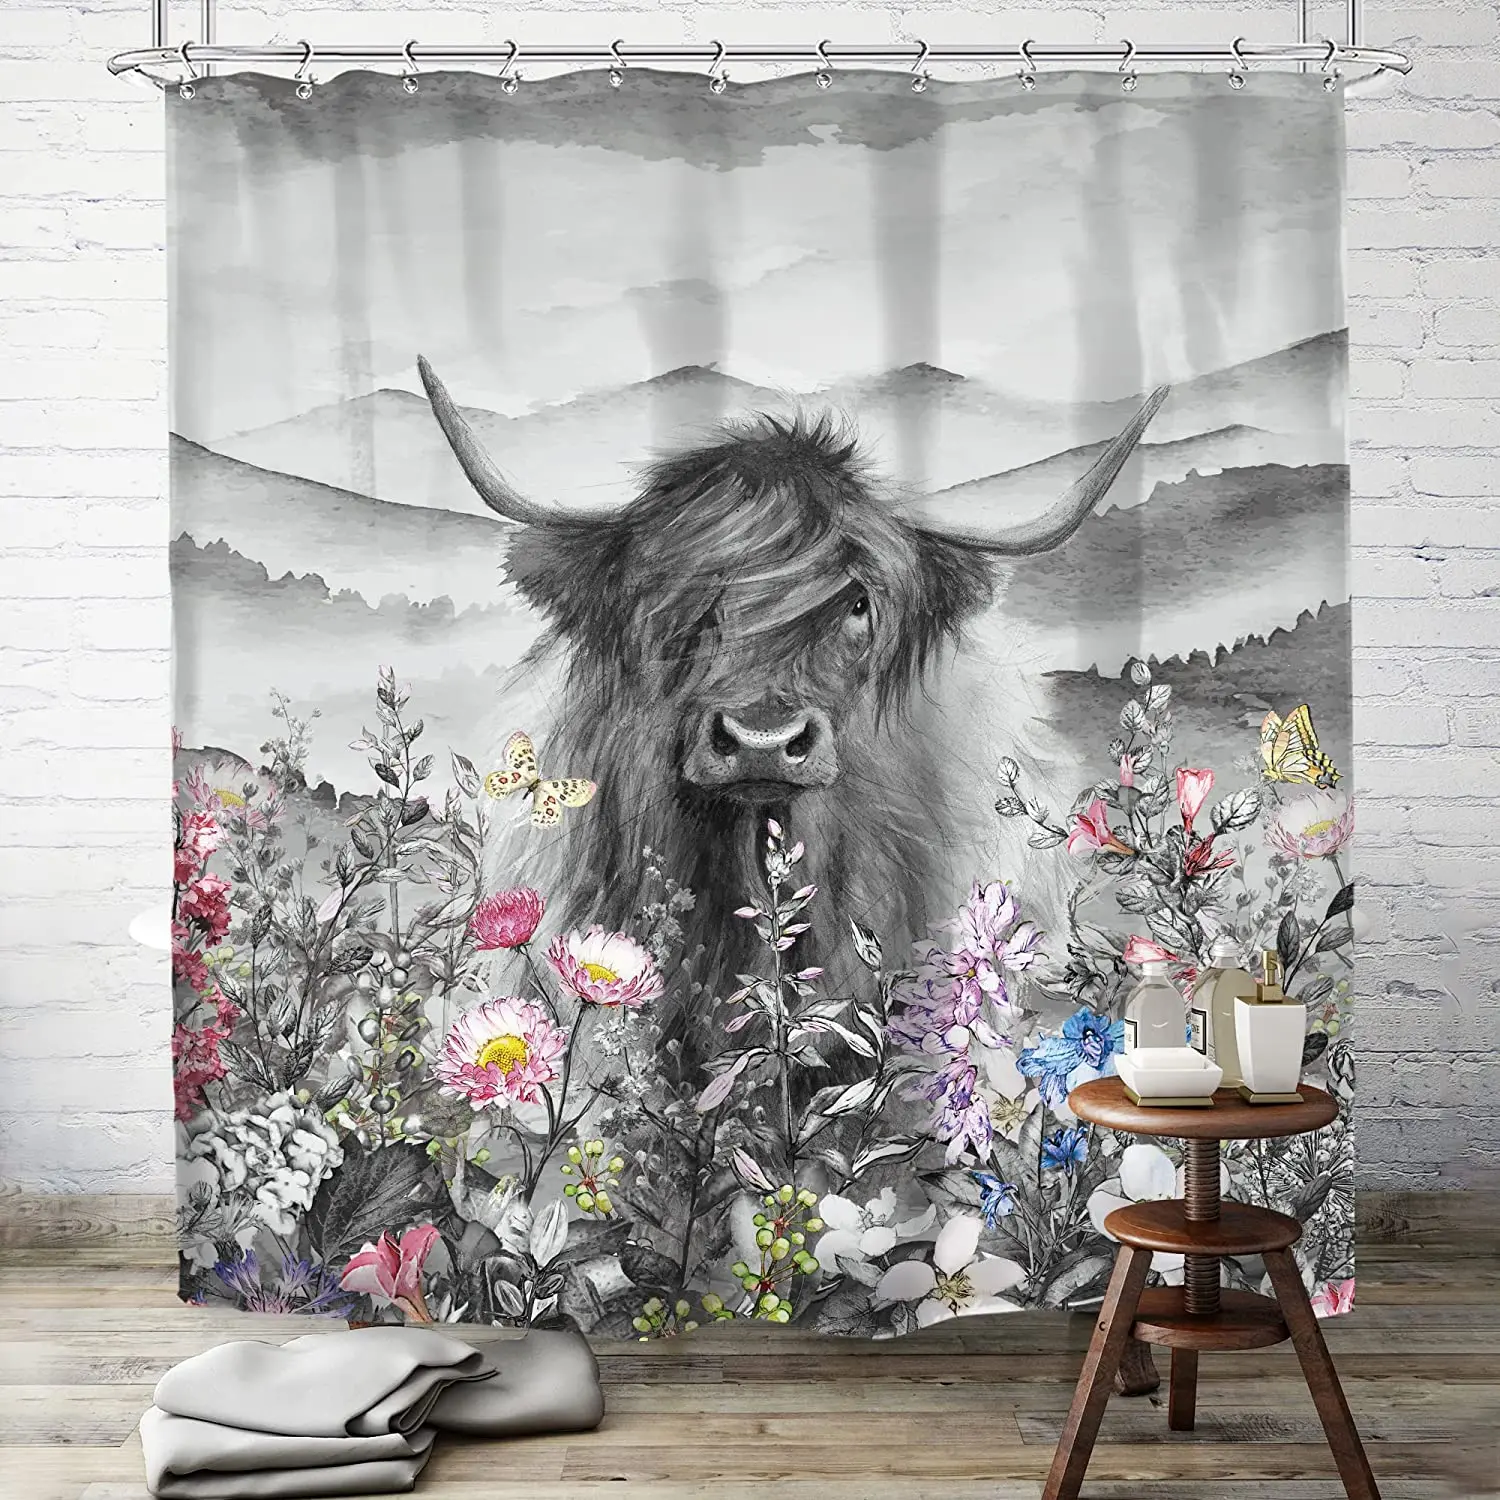 

Highland корова бык душевая занавеска фермерский цветочный Западный дикий серый длинный горный скот симпатичный пушистый полиэстер водонепро...